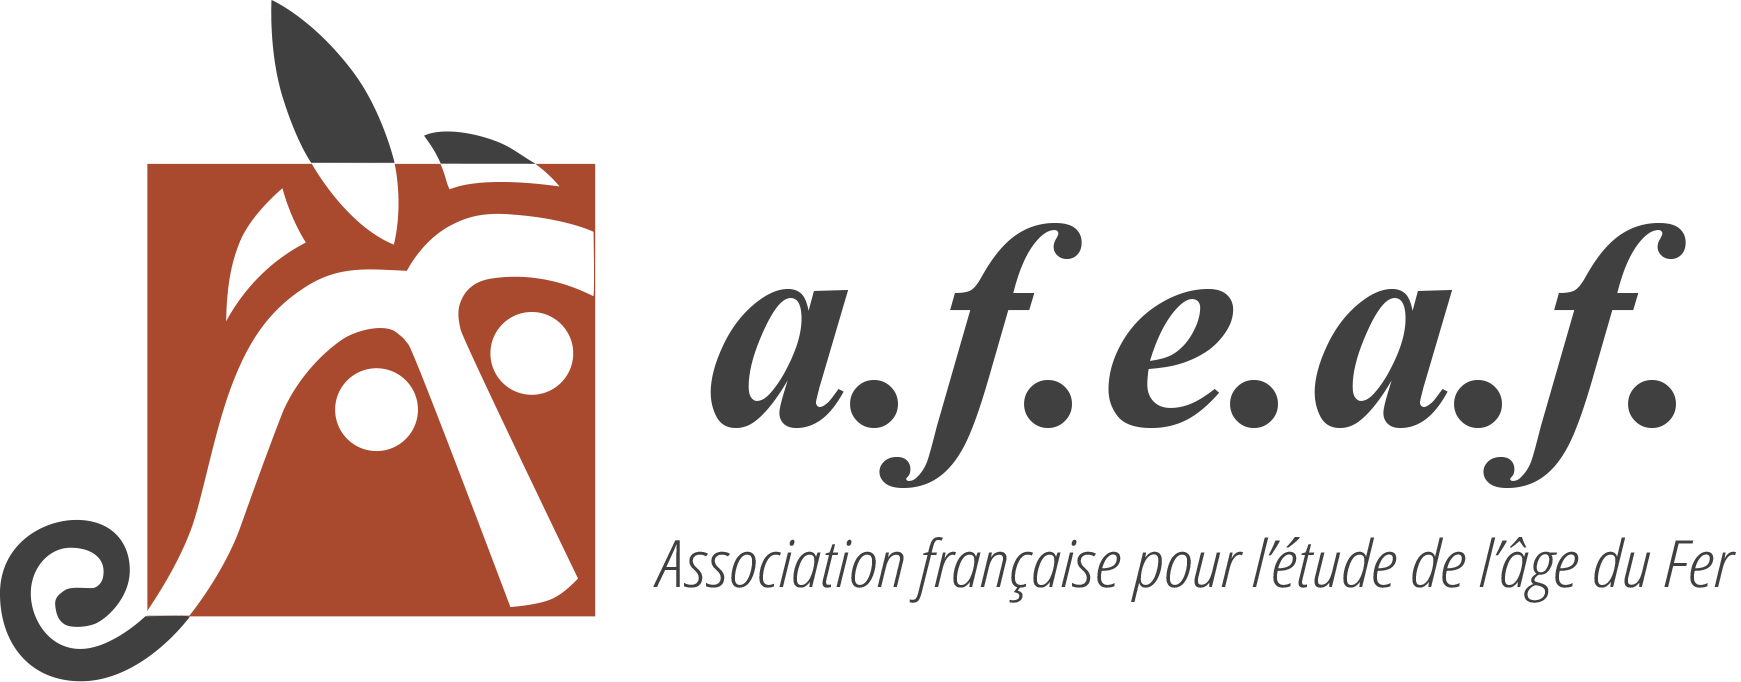 Association française pour l'étude de l'âge du Fer